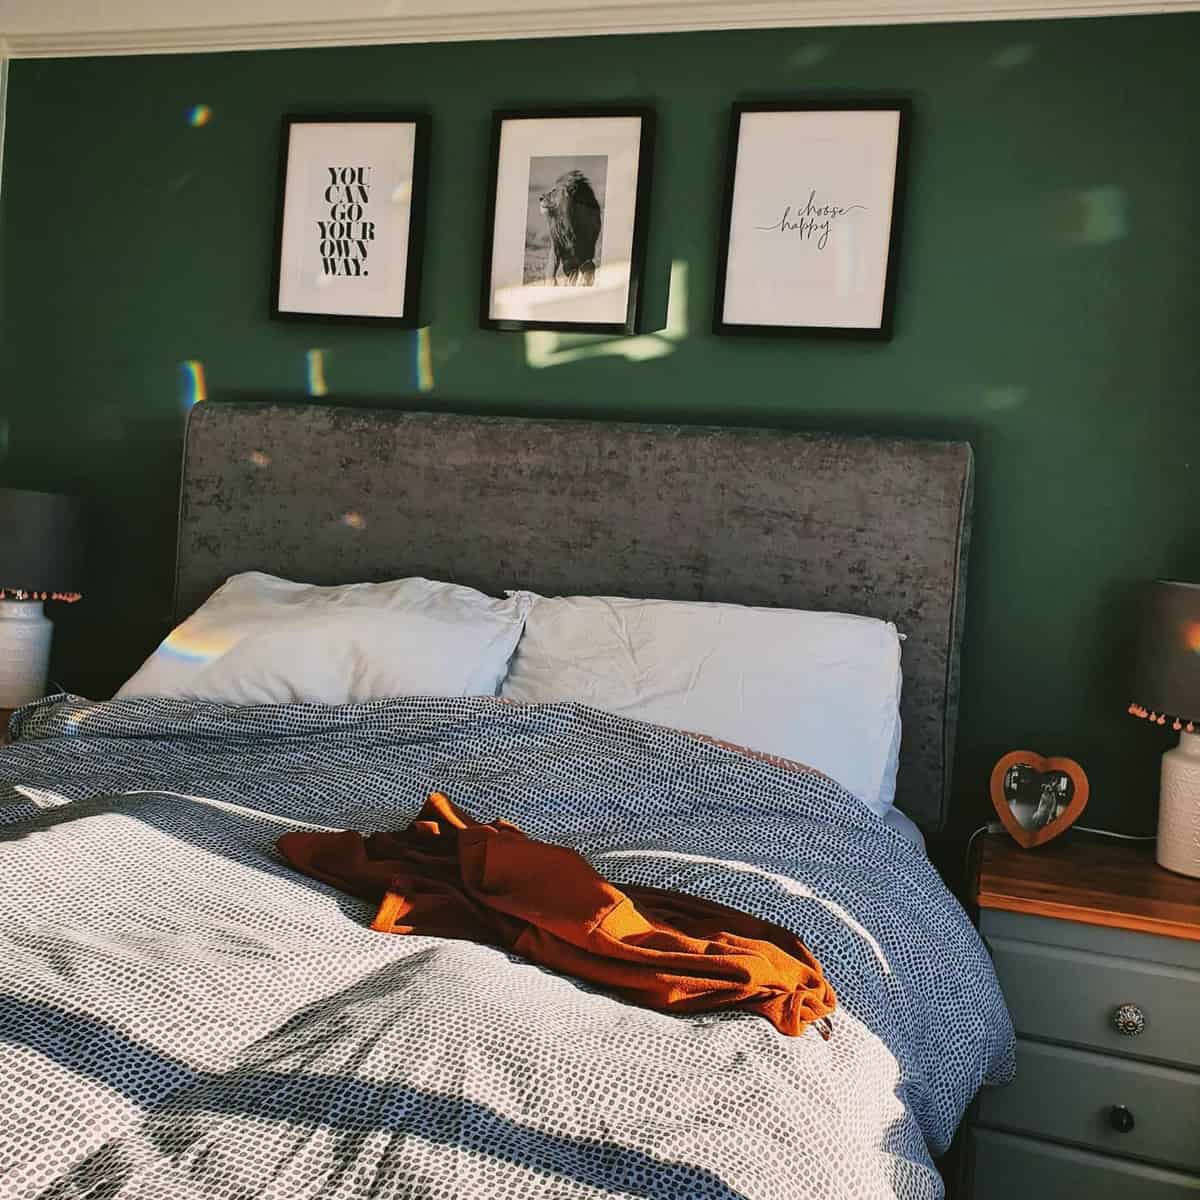 Green wall, bedroom, gray bed, framed wall art